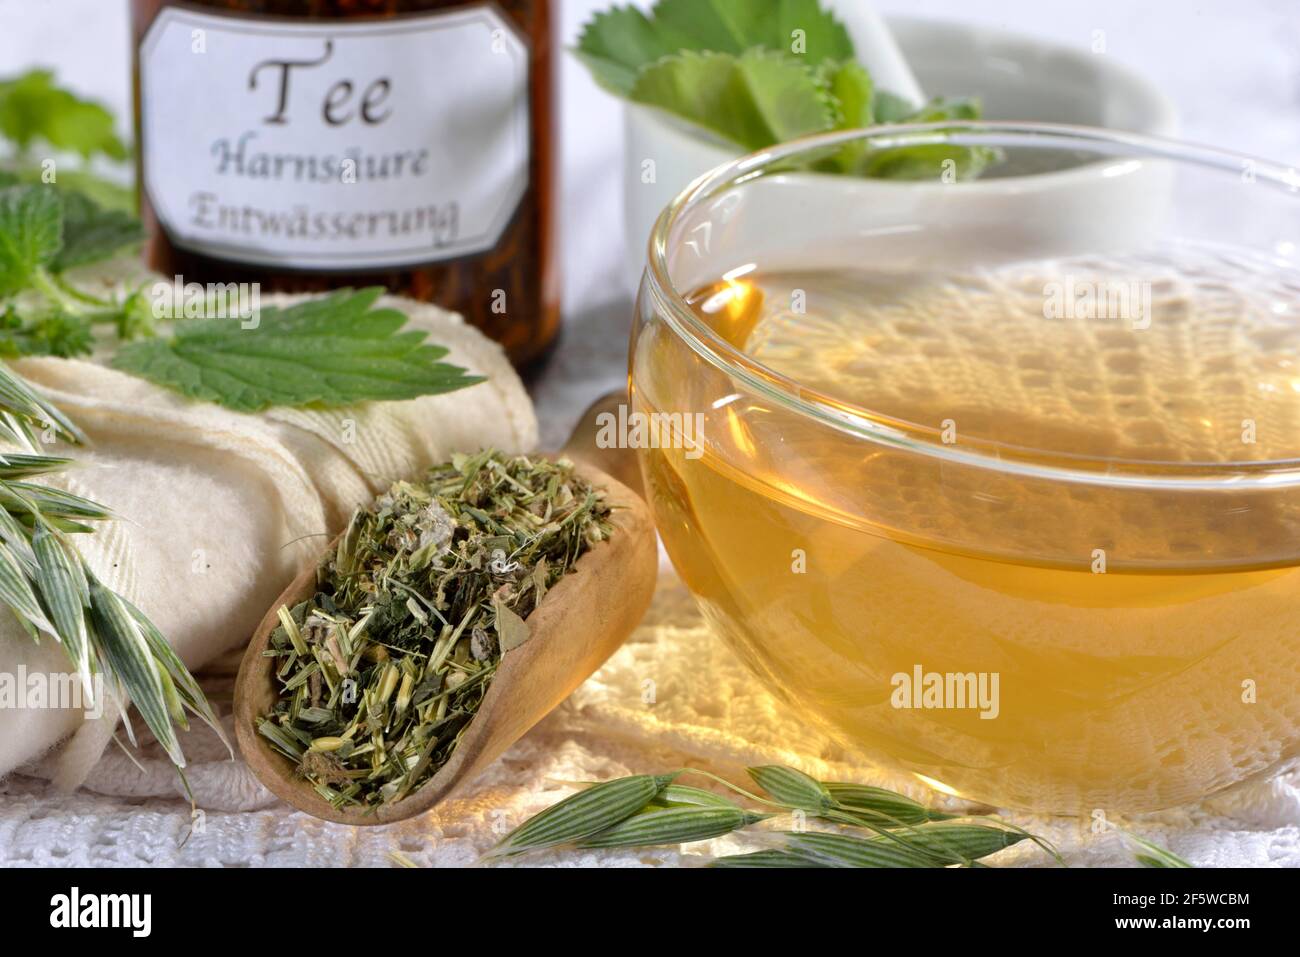 Oat herb, oat straw, nettle, Alpine lady's mantle (Avena sativa) (Urtica dioica) (Alchemilla alpina), green oat tea Stock Photo